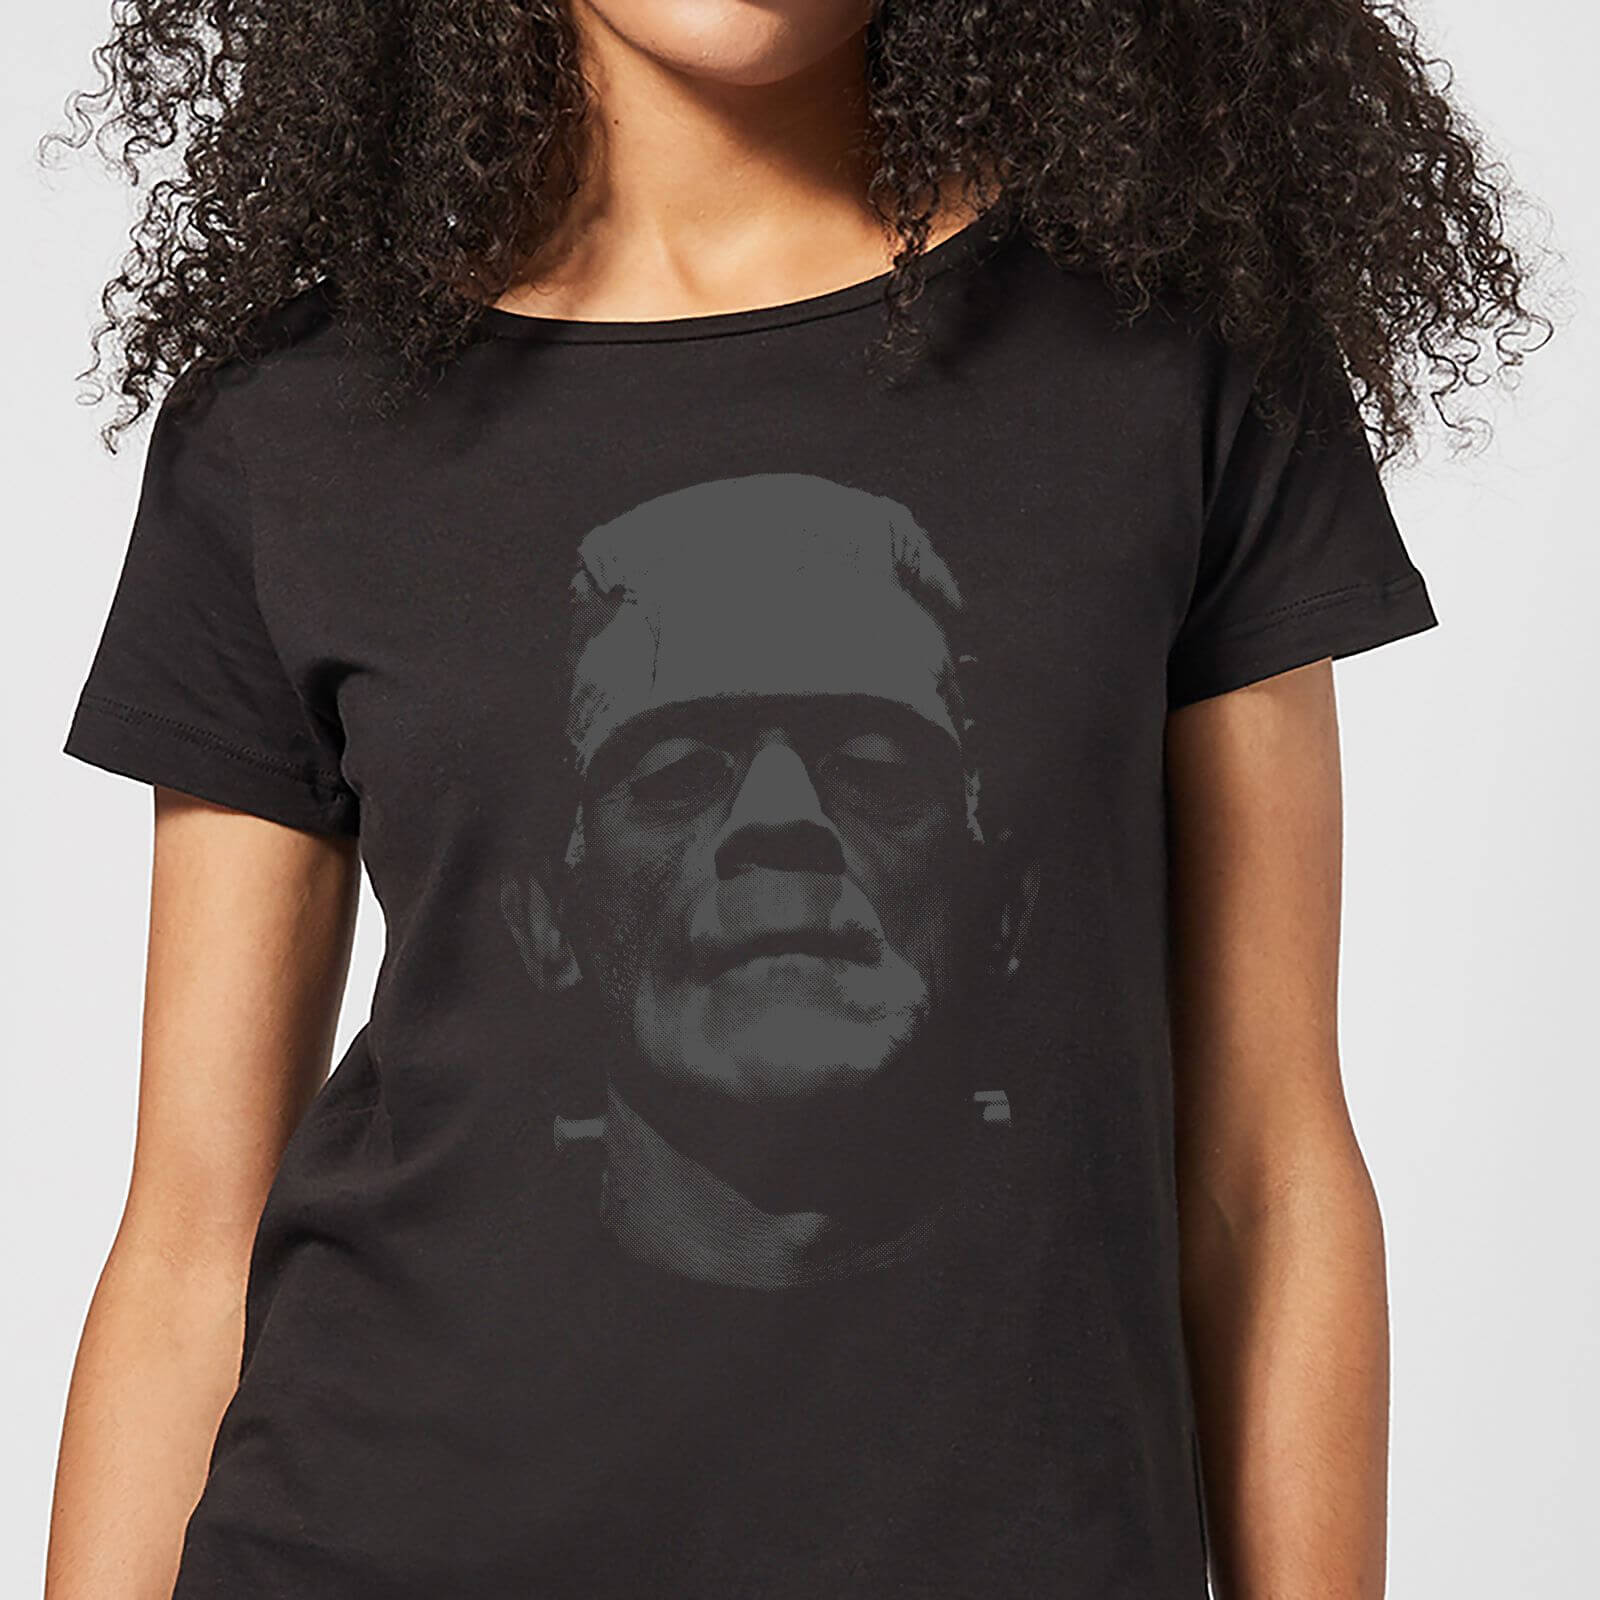 Universal Monsters Frankenstein Black and White Women's T-Shirt - Black - 4XL